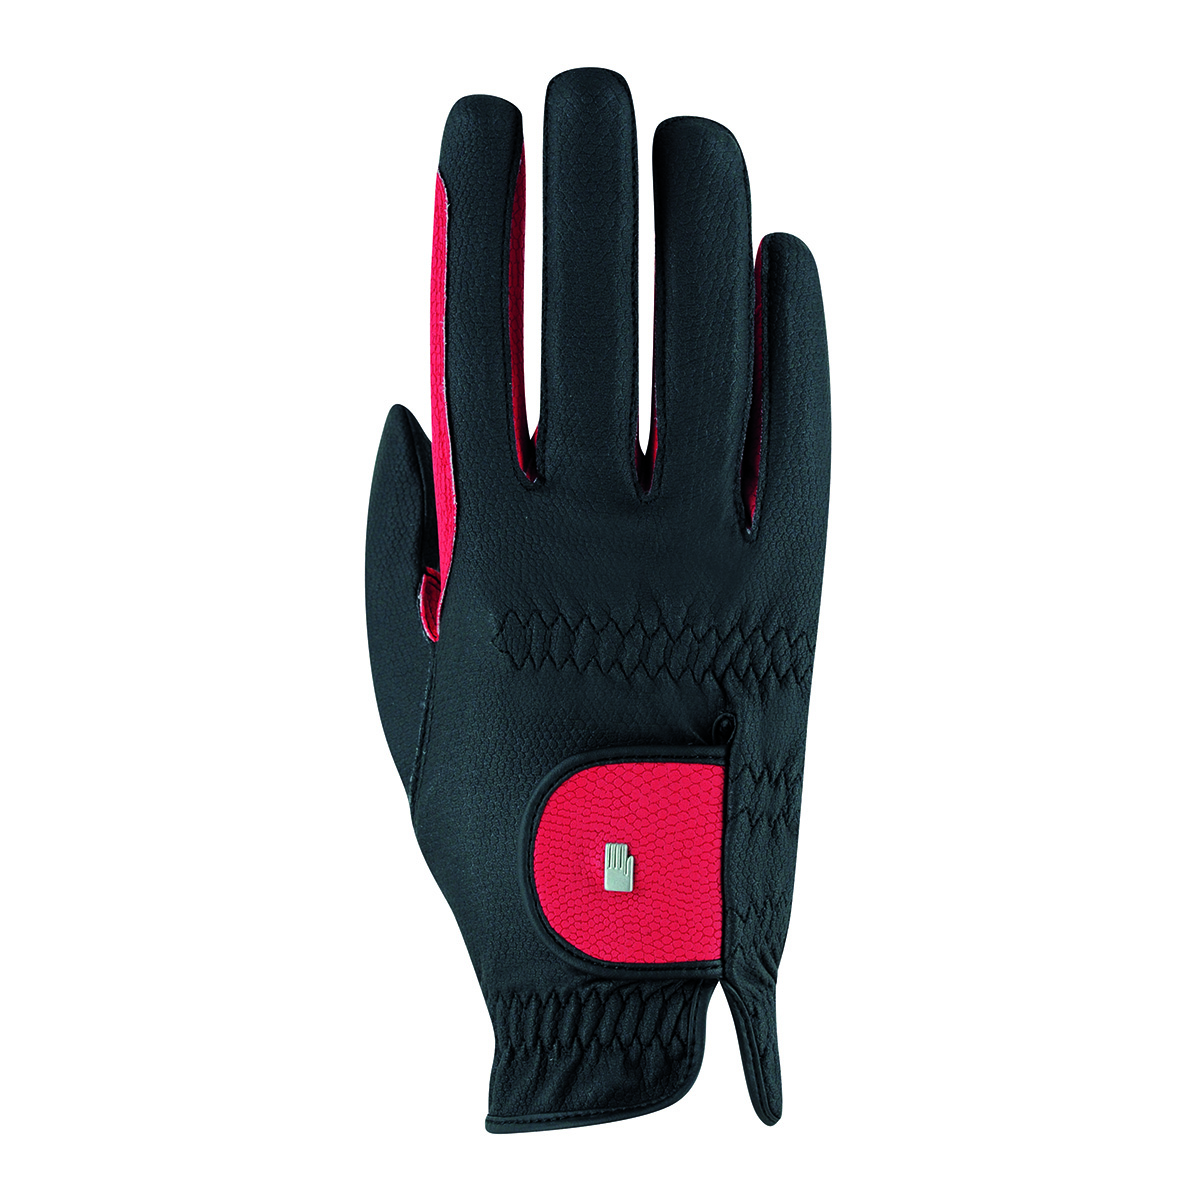 Handschoenen Roeckl Malta Grip Bicolor, 6 in zwart/rood